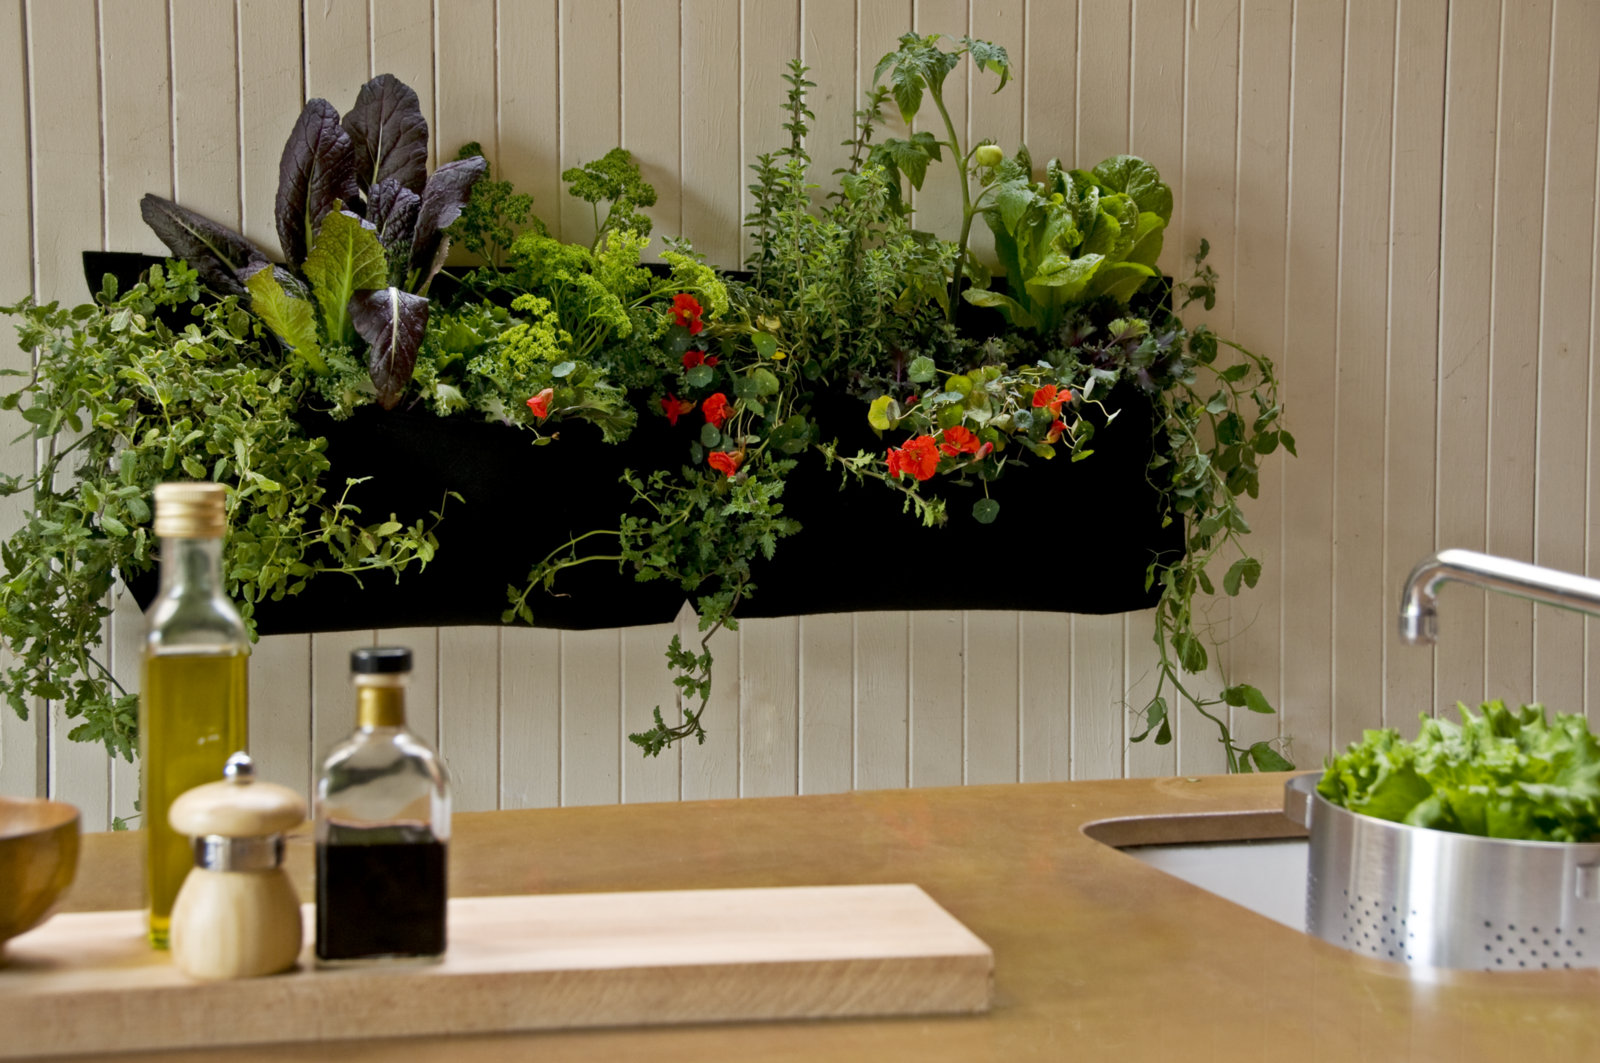 A Stylish Indoor Kitchen Herb Garden New Decorating Ideas